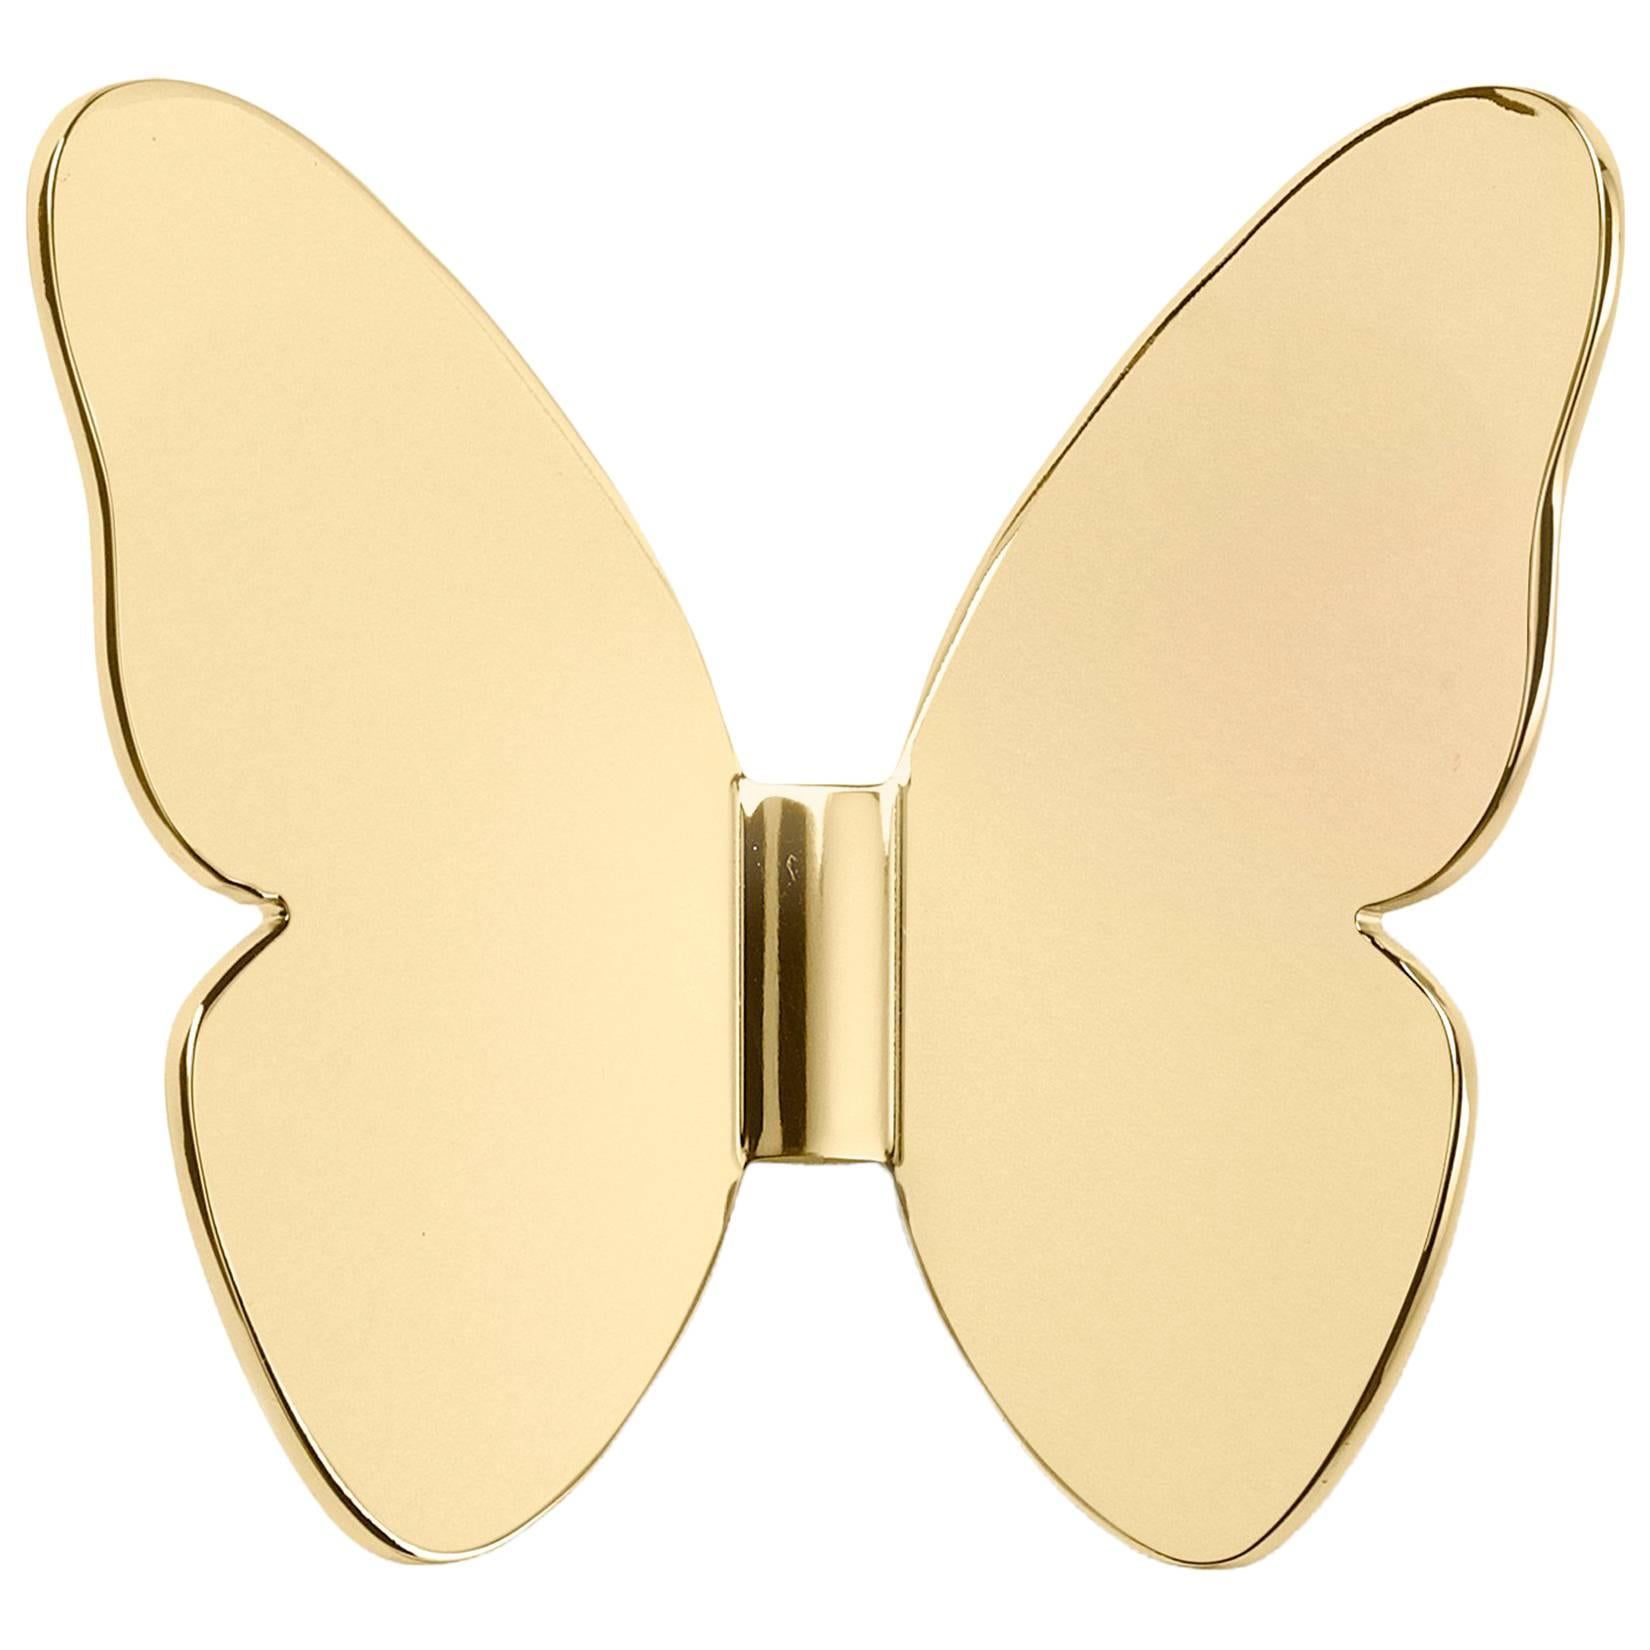 Ghidini 1961 Single Butterfly Hook in Polished Brass